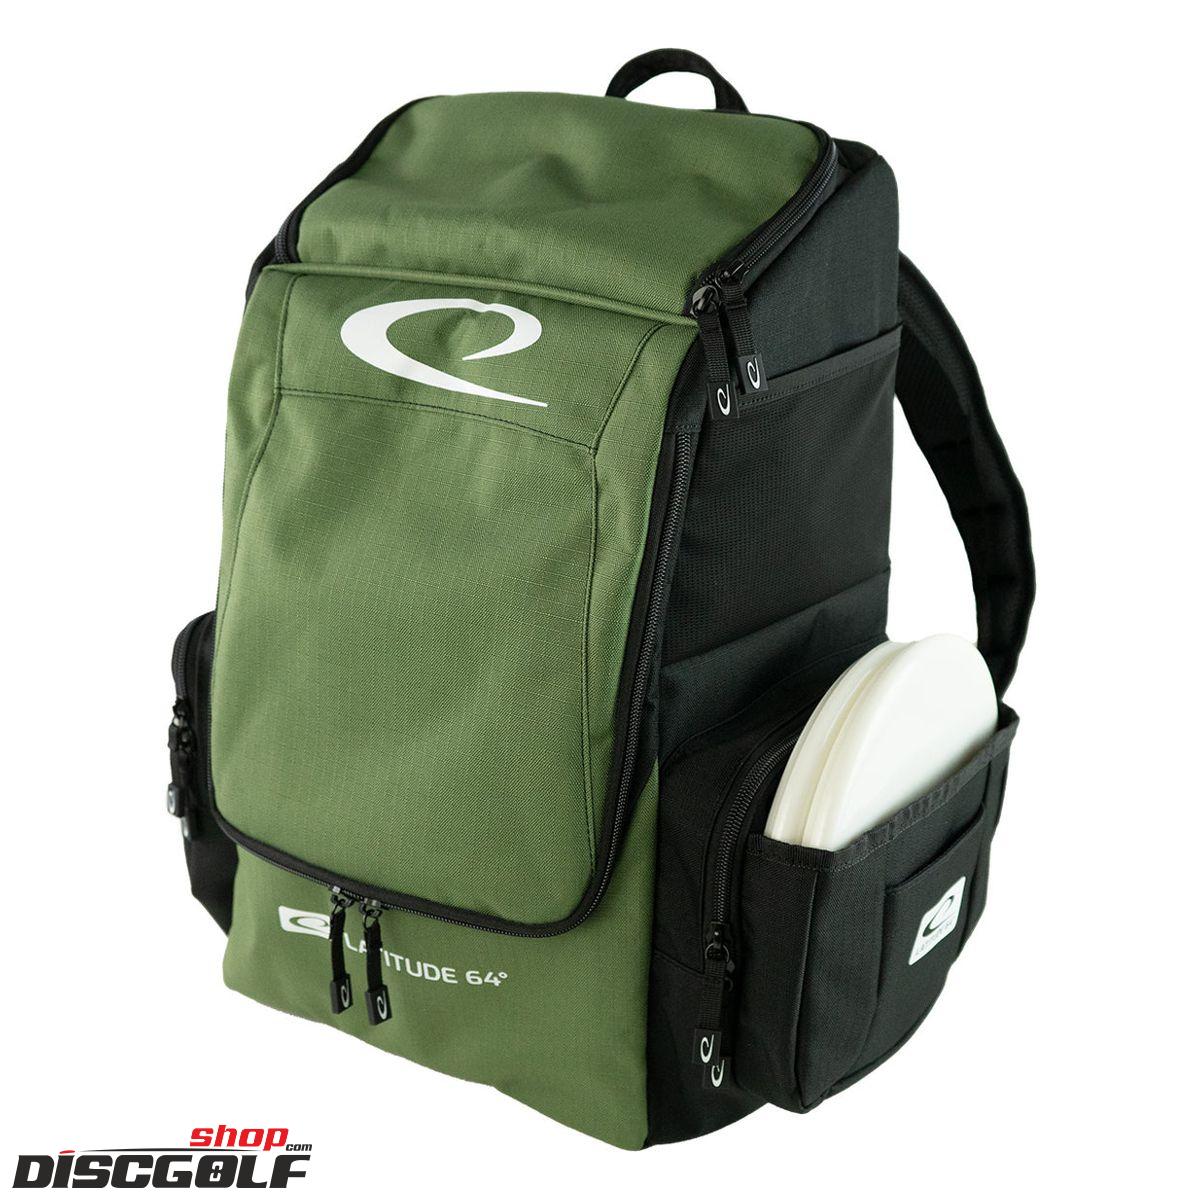 Latitude 64º Core Pro E2 Backpack - Černo-Zelená/Black-Ripe-Olive (discgolf)